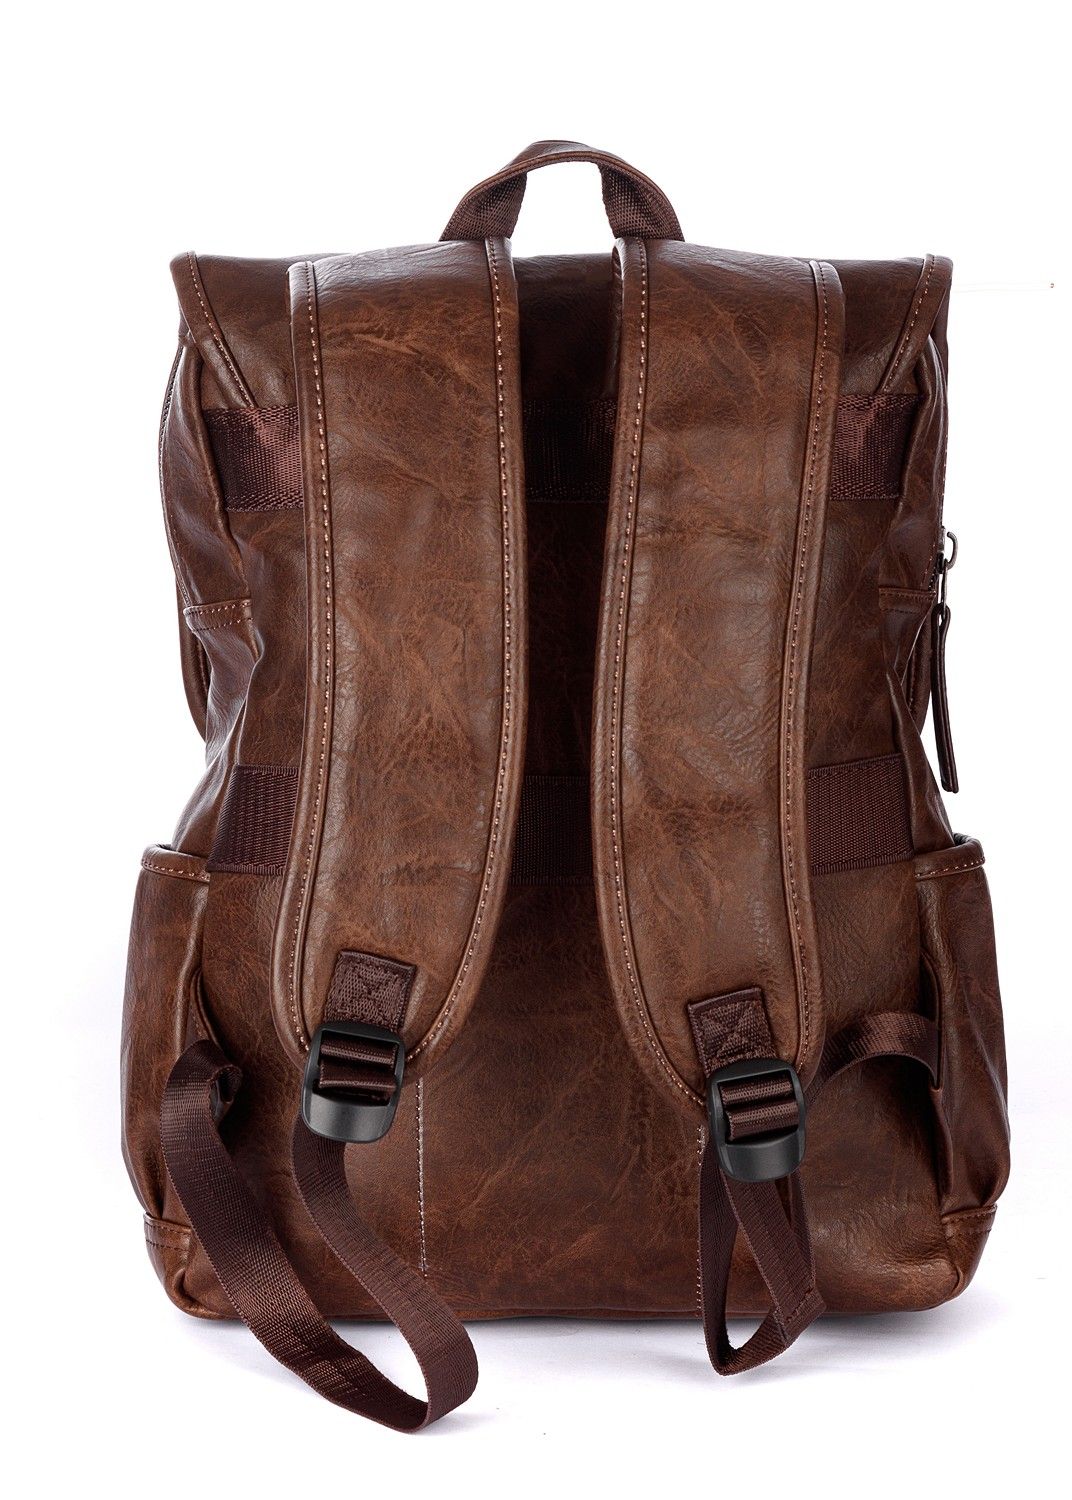 Рюкзак мужской / женский городской из искусственной кожи, коричневый, с широкими лямками, объем 14л